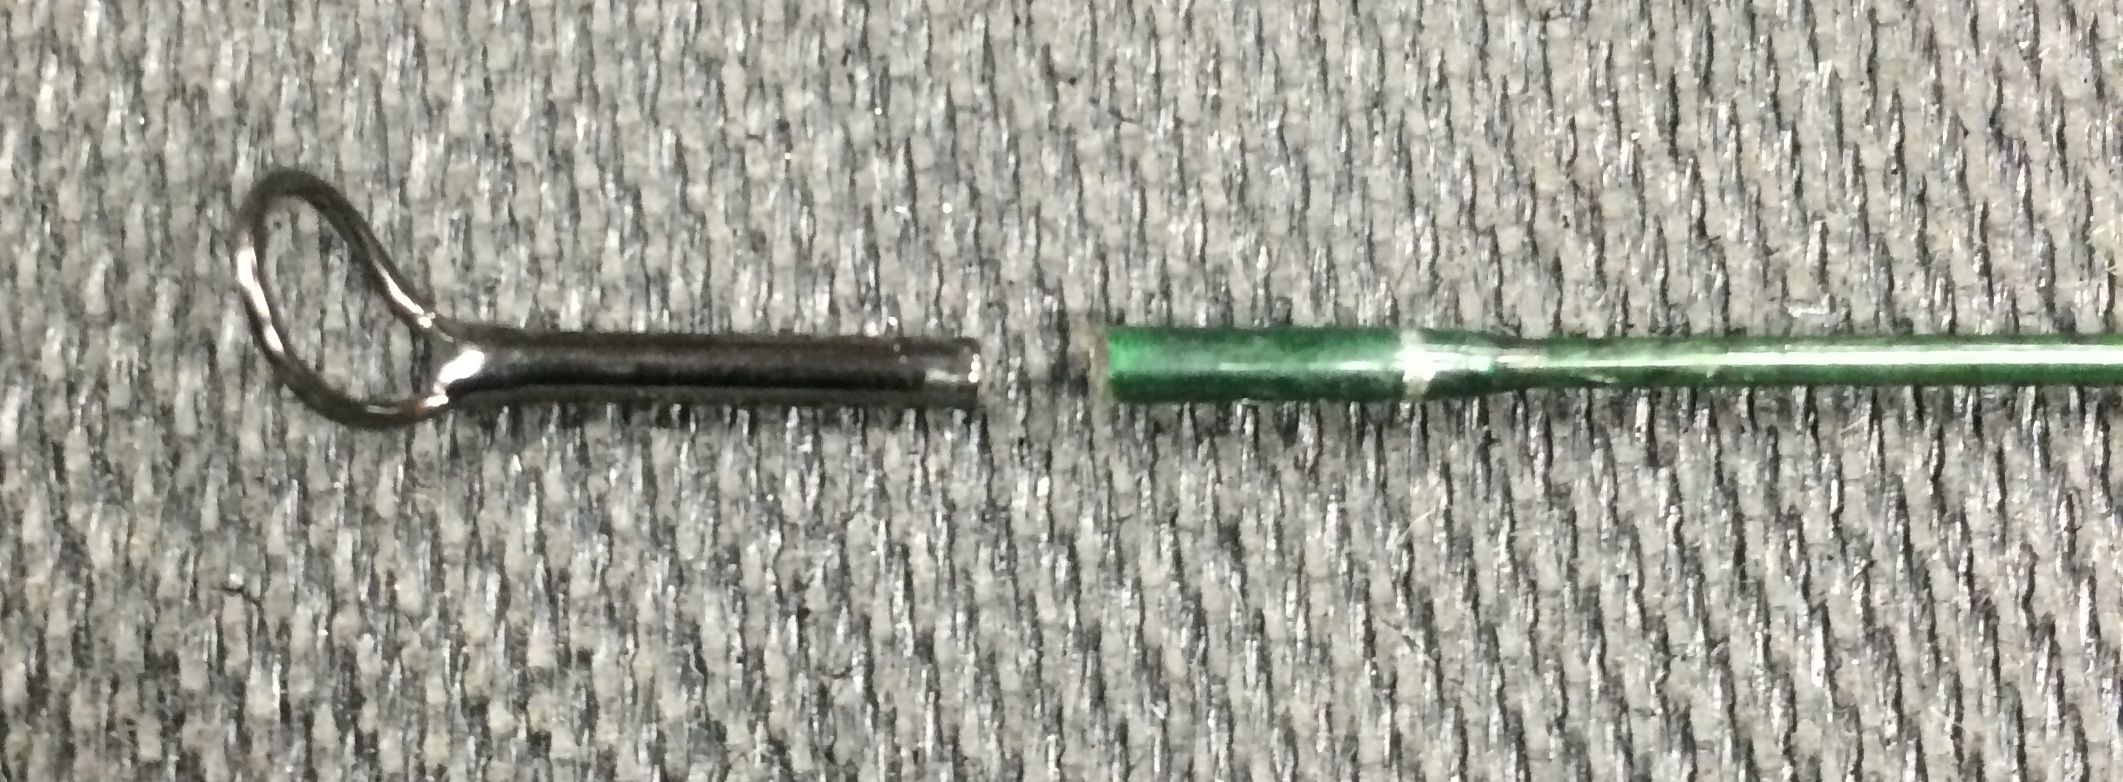 Repairing a broken rod tip - Rod repair. 